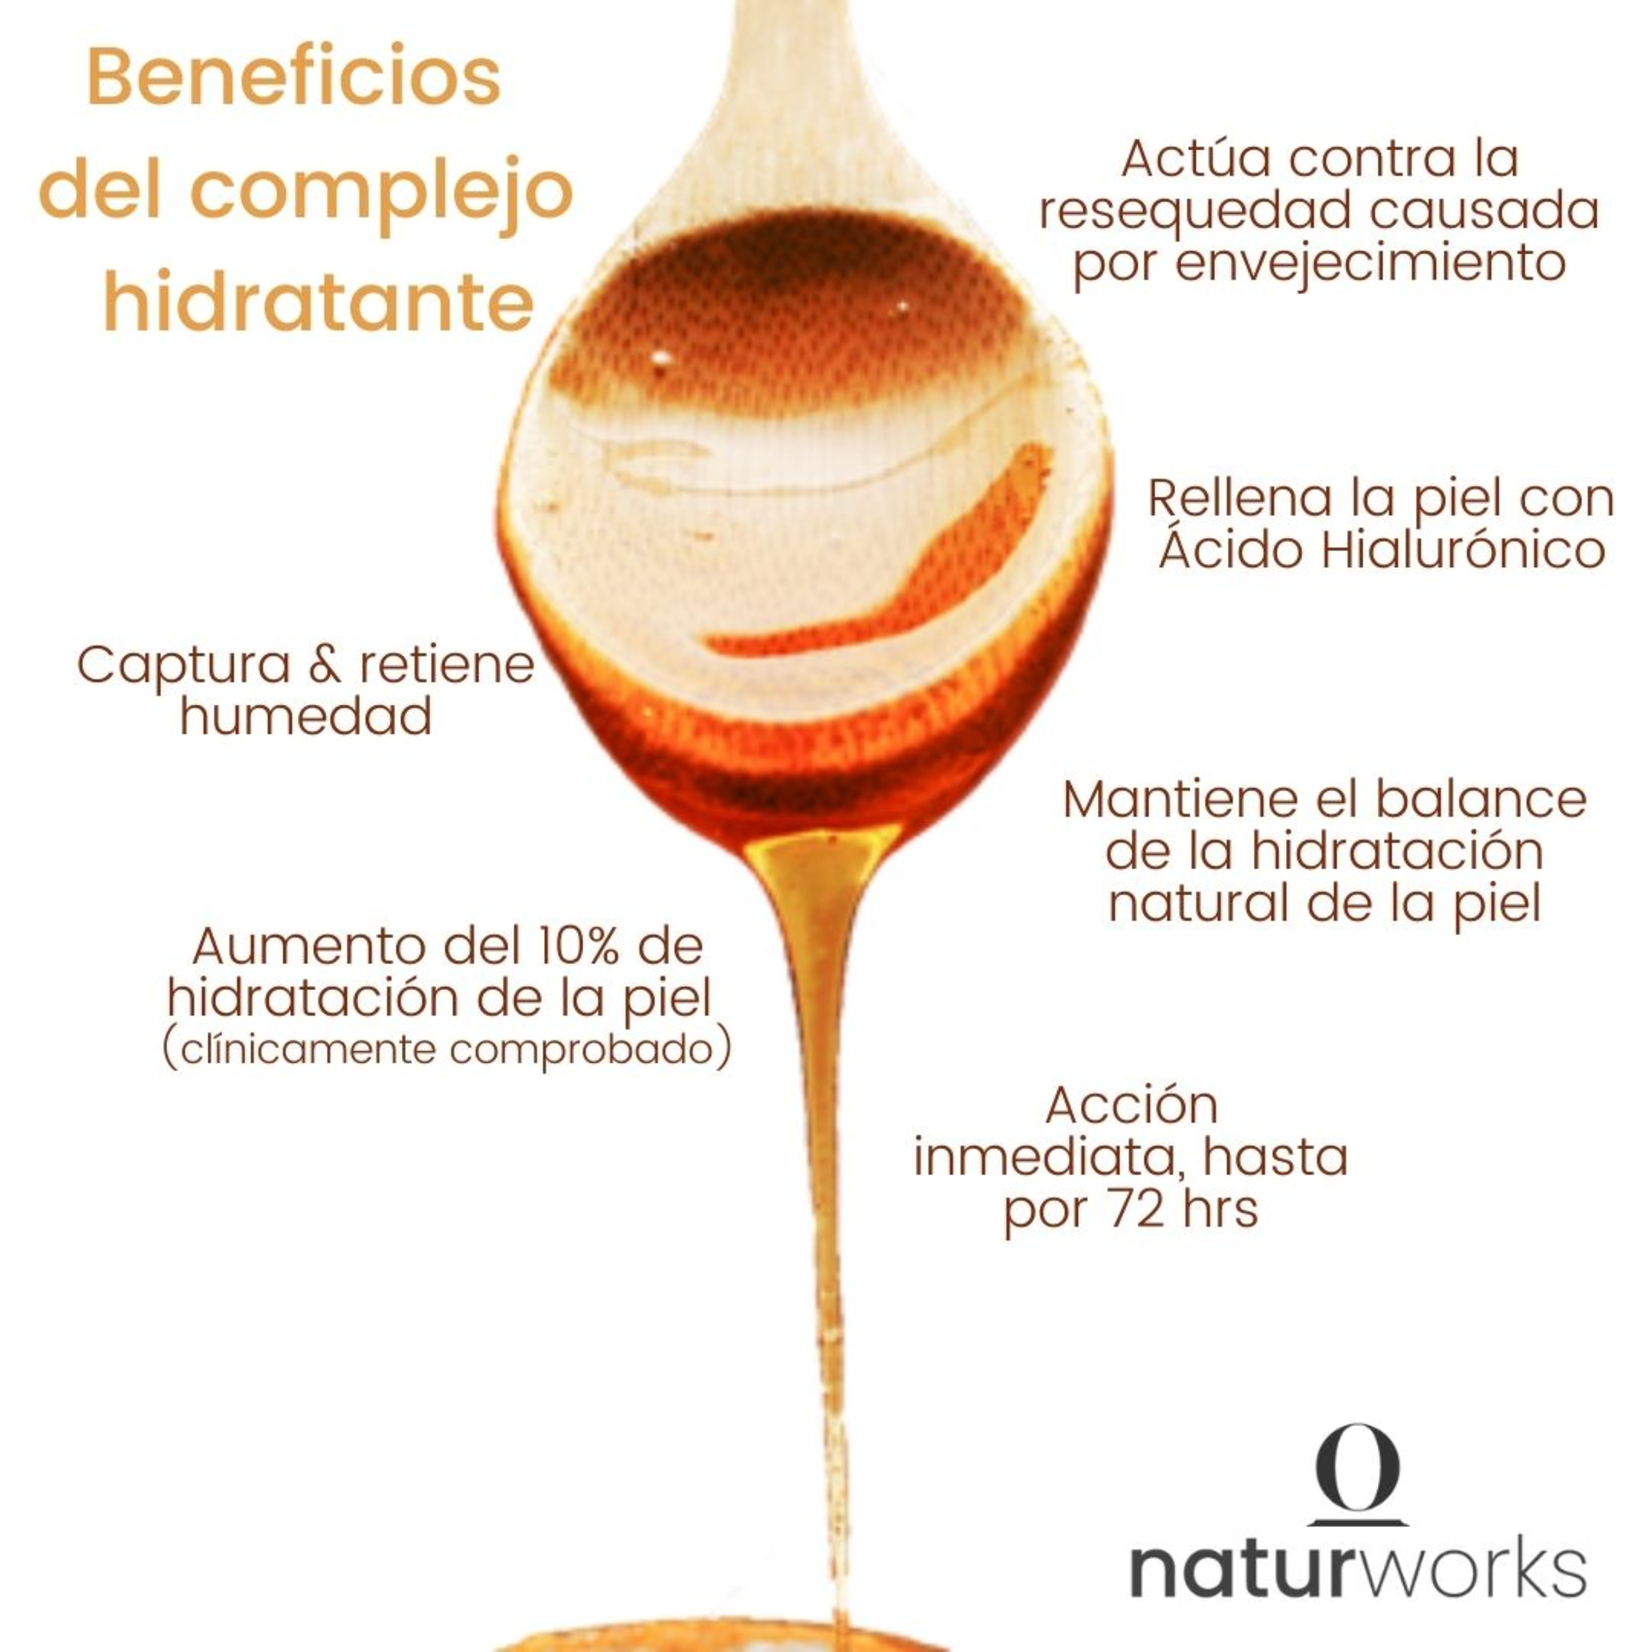 Naturworks Crema para peinar Naturworks con extracto frutal hidratante y acido hialuronico 240 ml